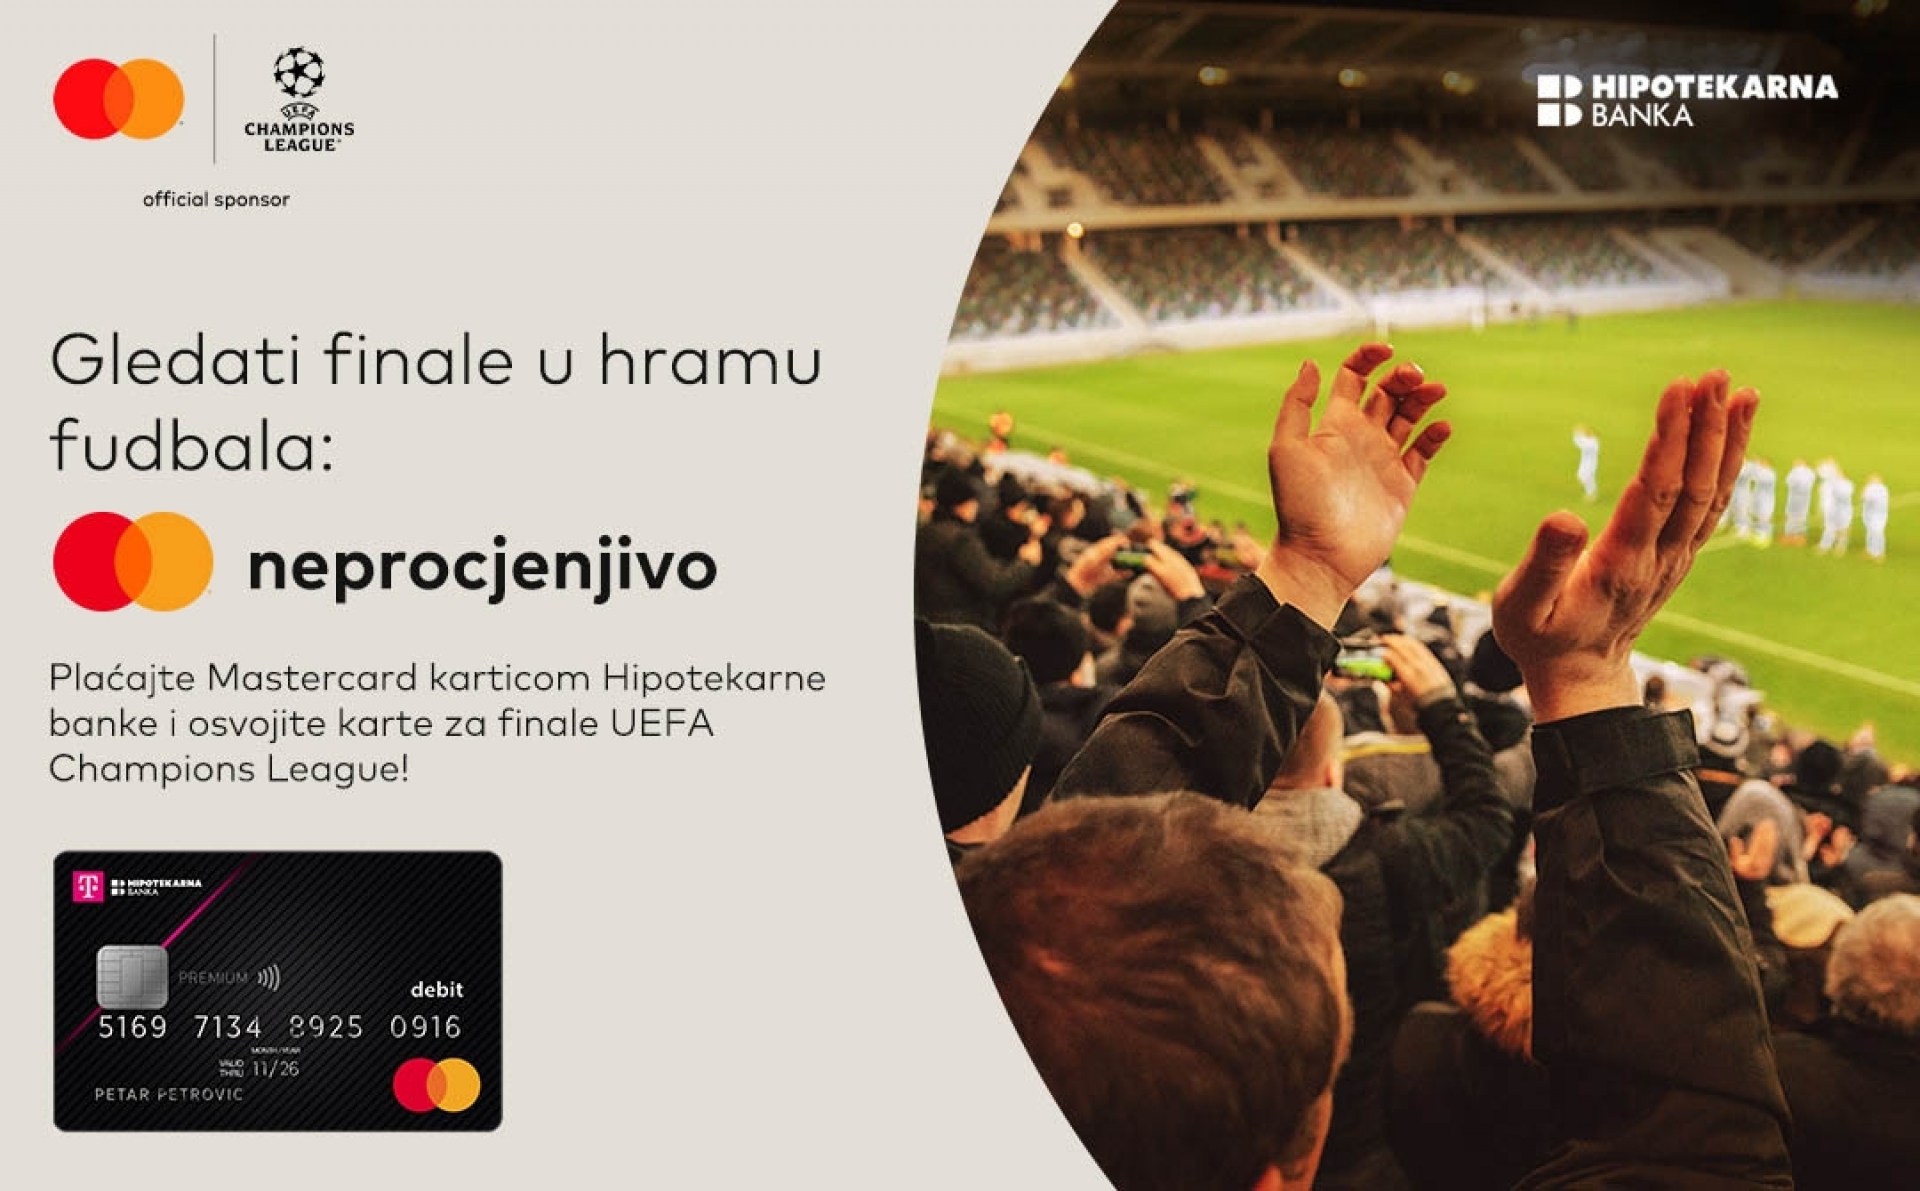 “Hipotekarna banka i Mastercard vas vode na finale UEFA Champions League u Londonu”